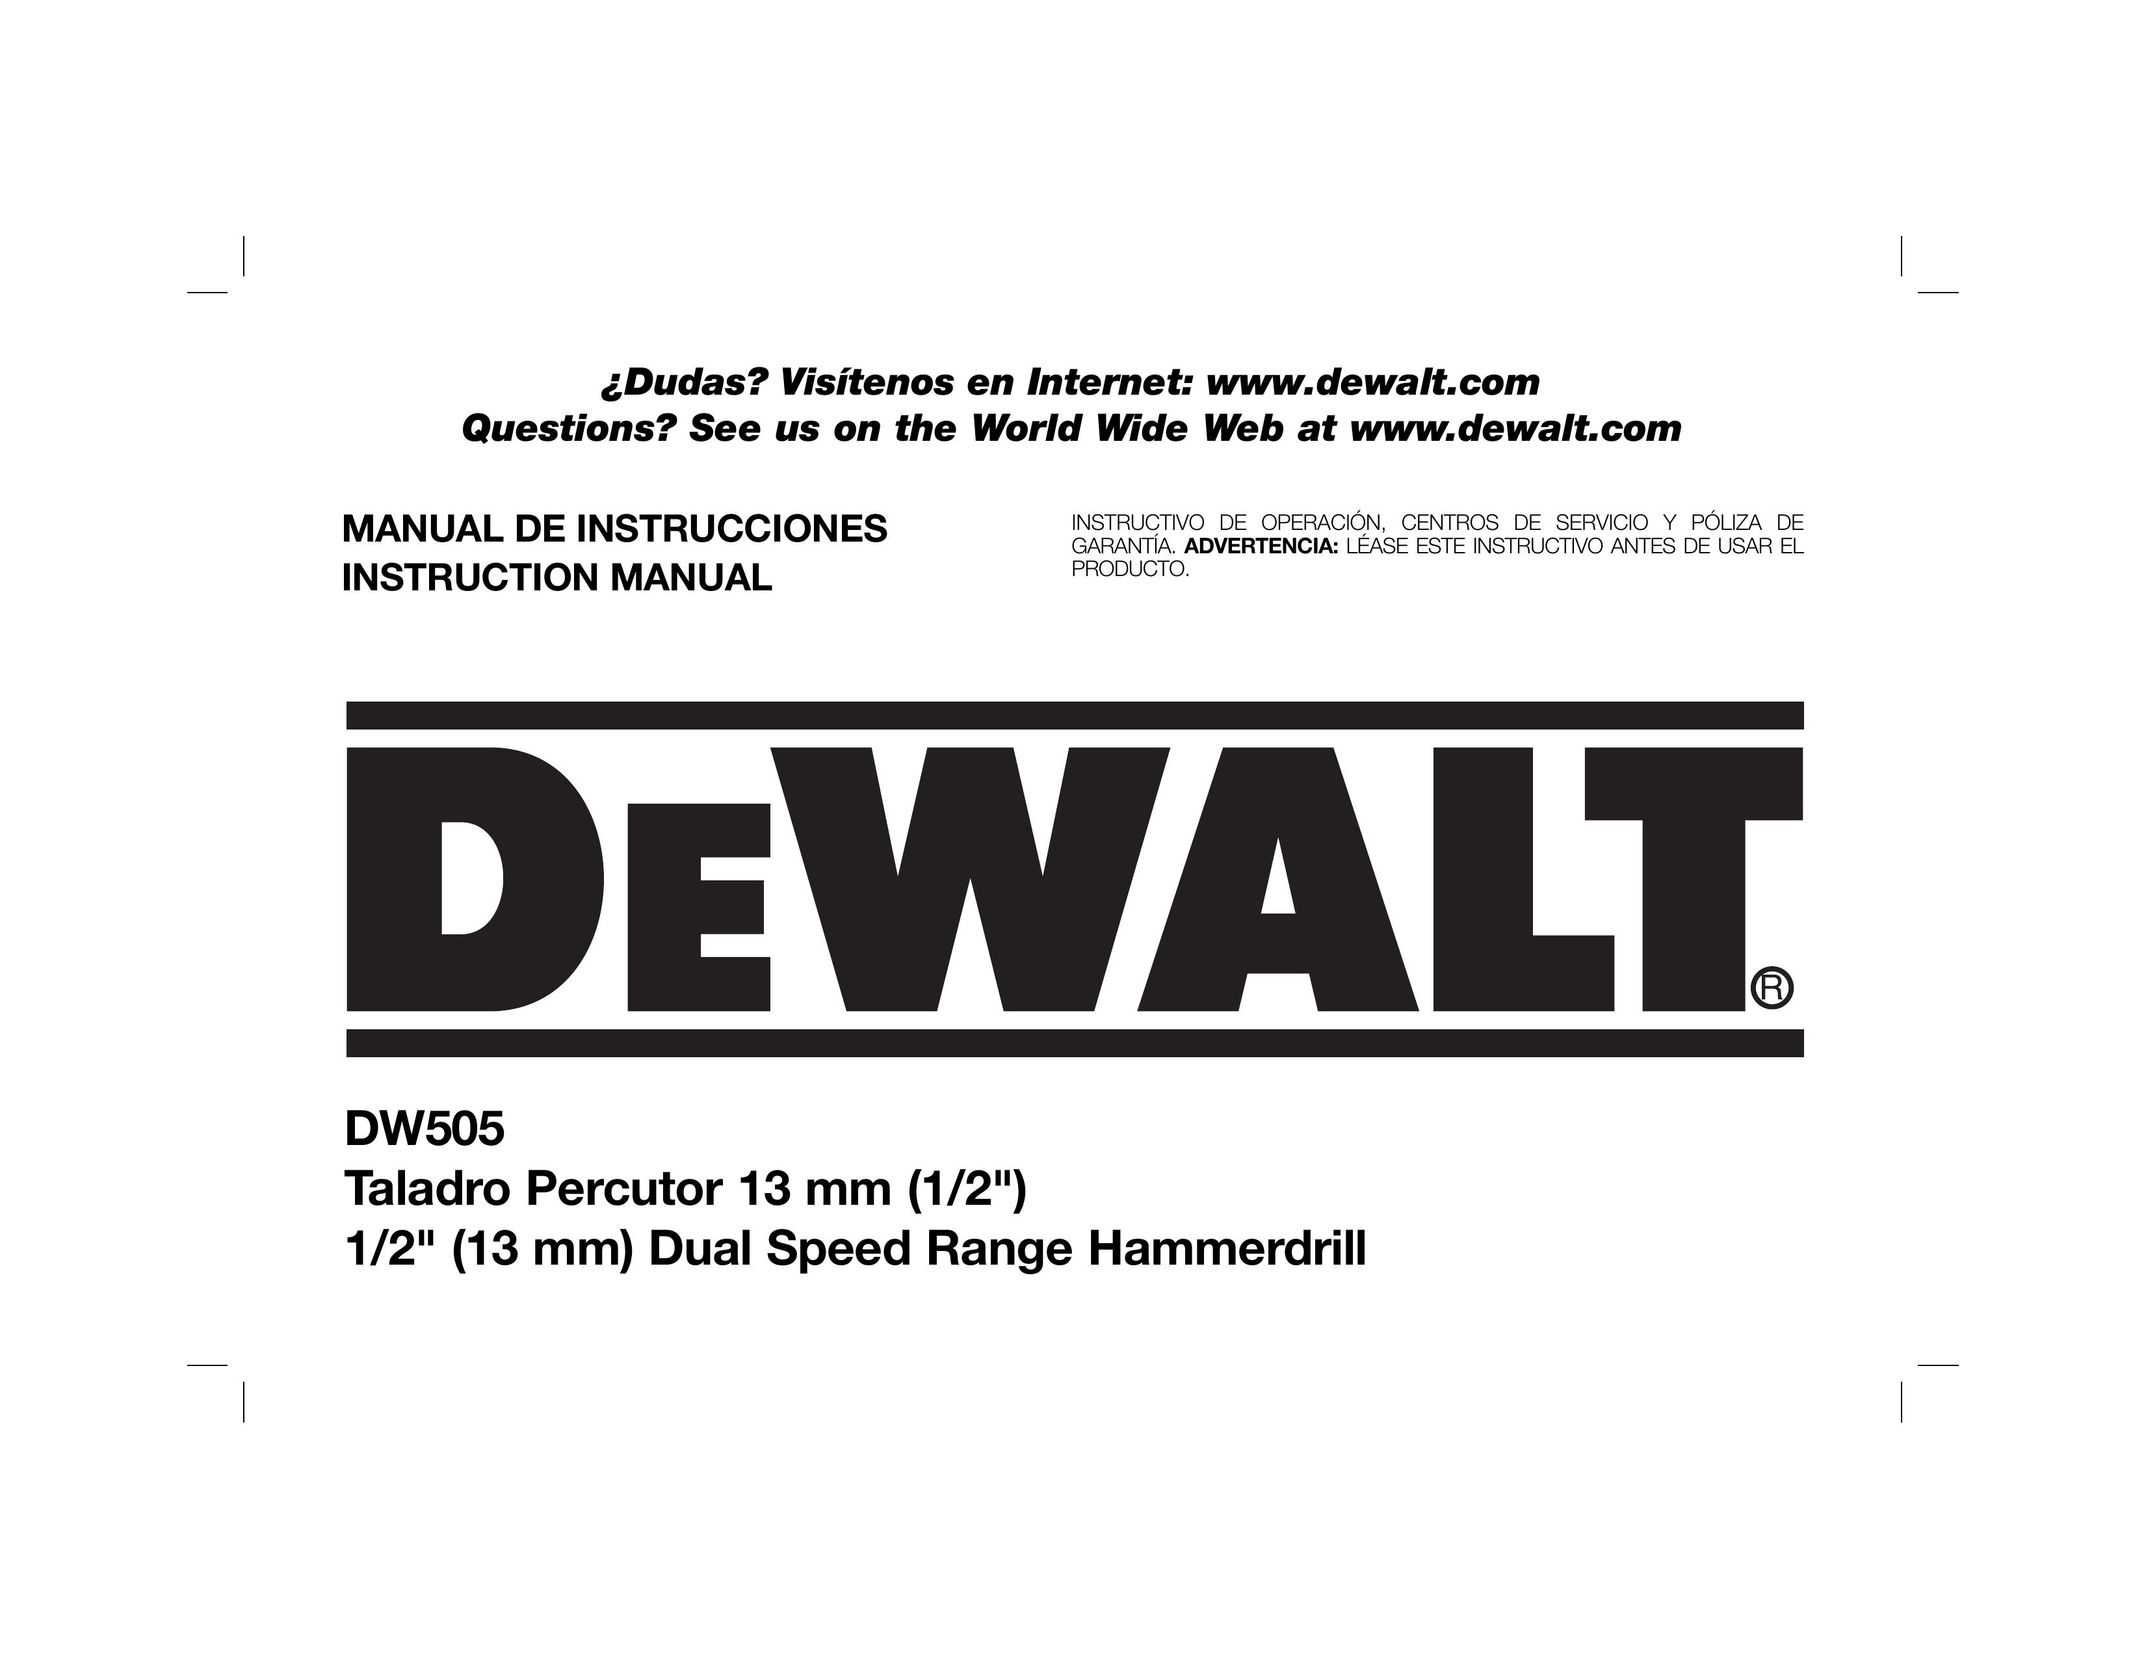 DeWalt DW505 Cordless Drill User Manual